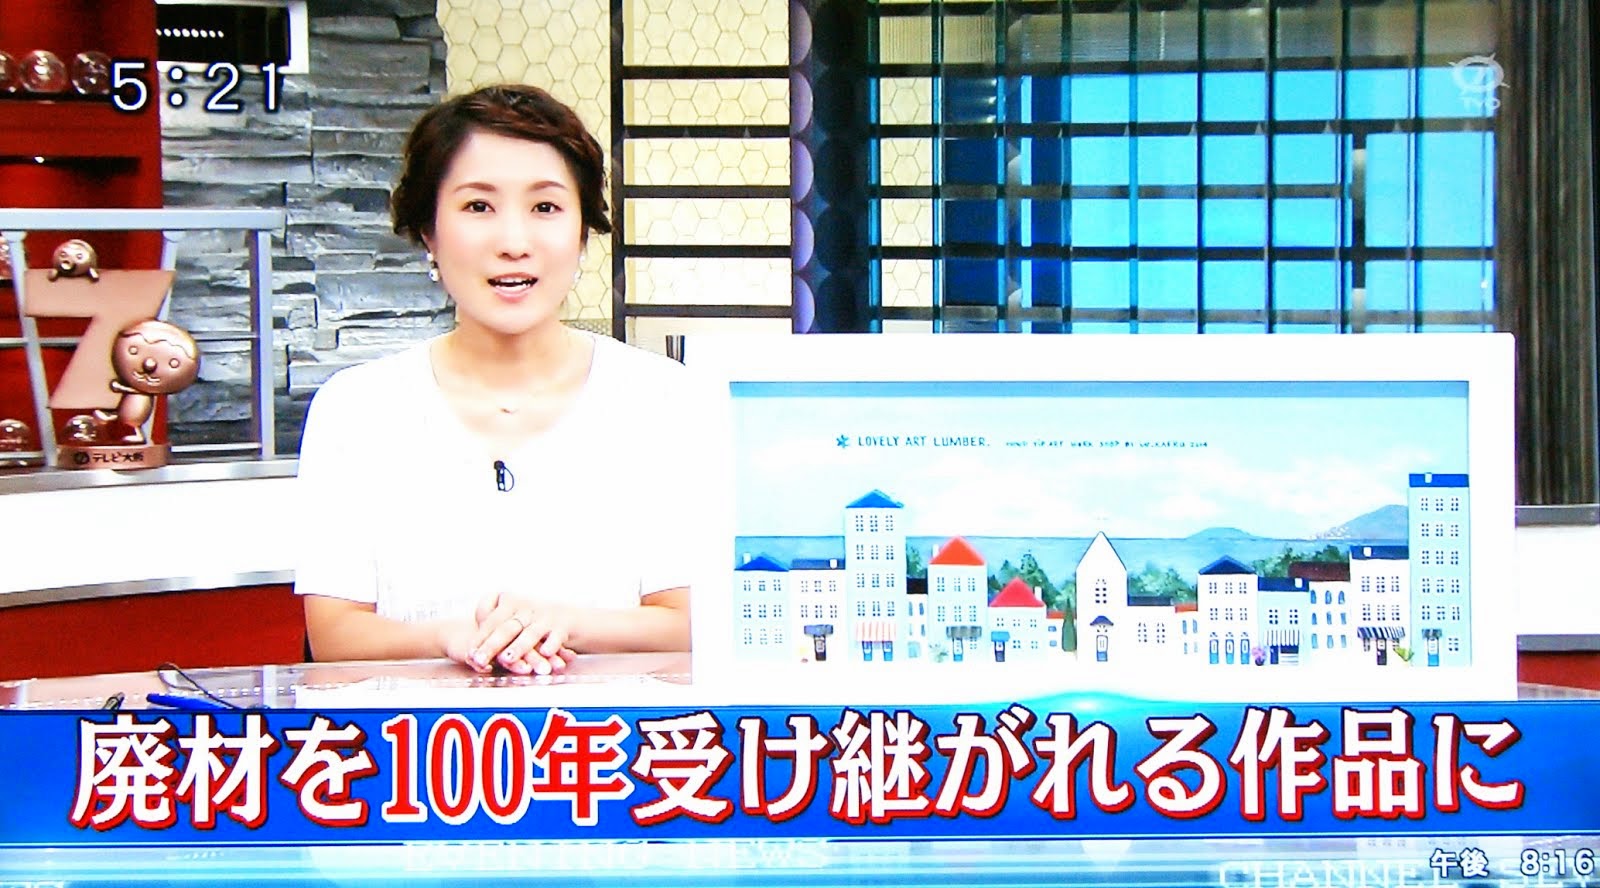 2014.9 テレビ大阪